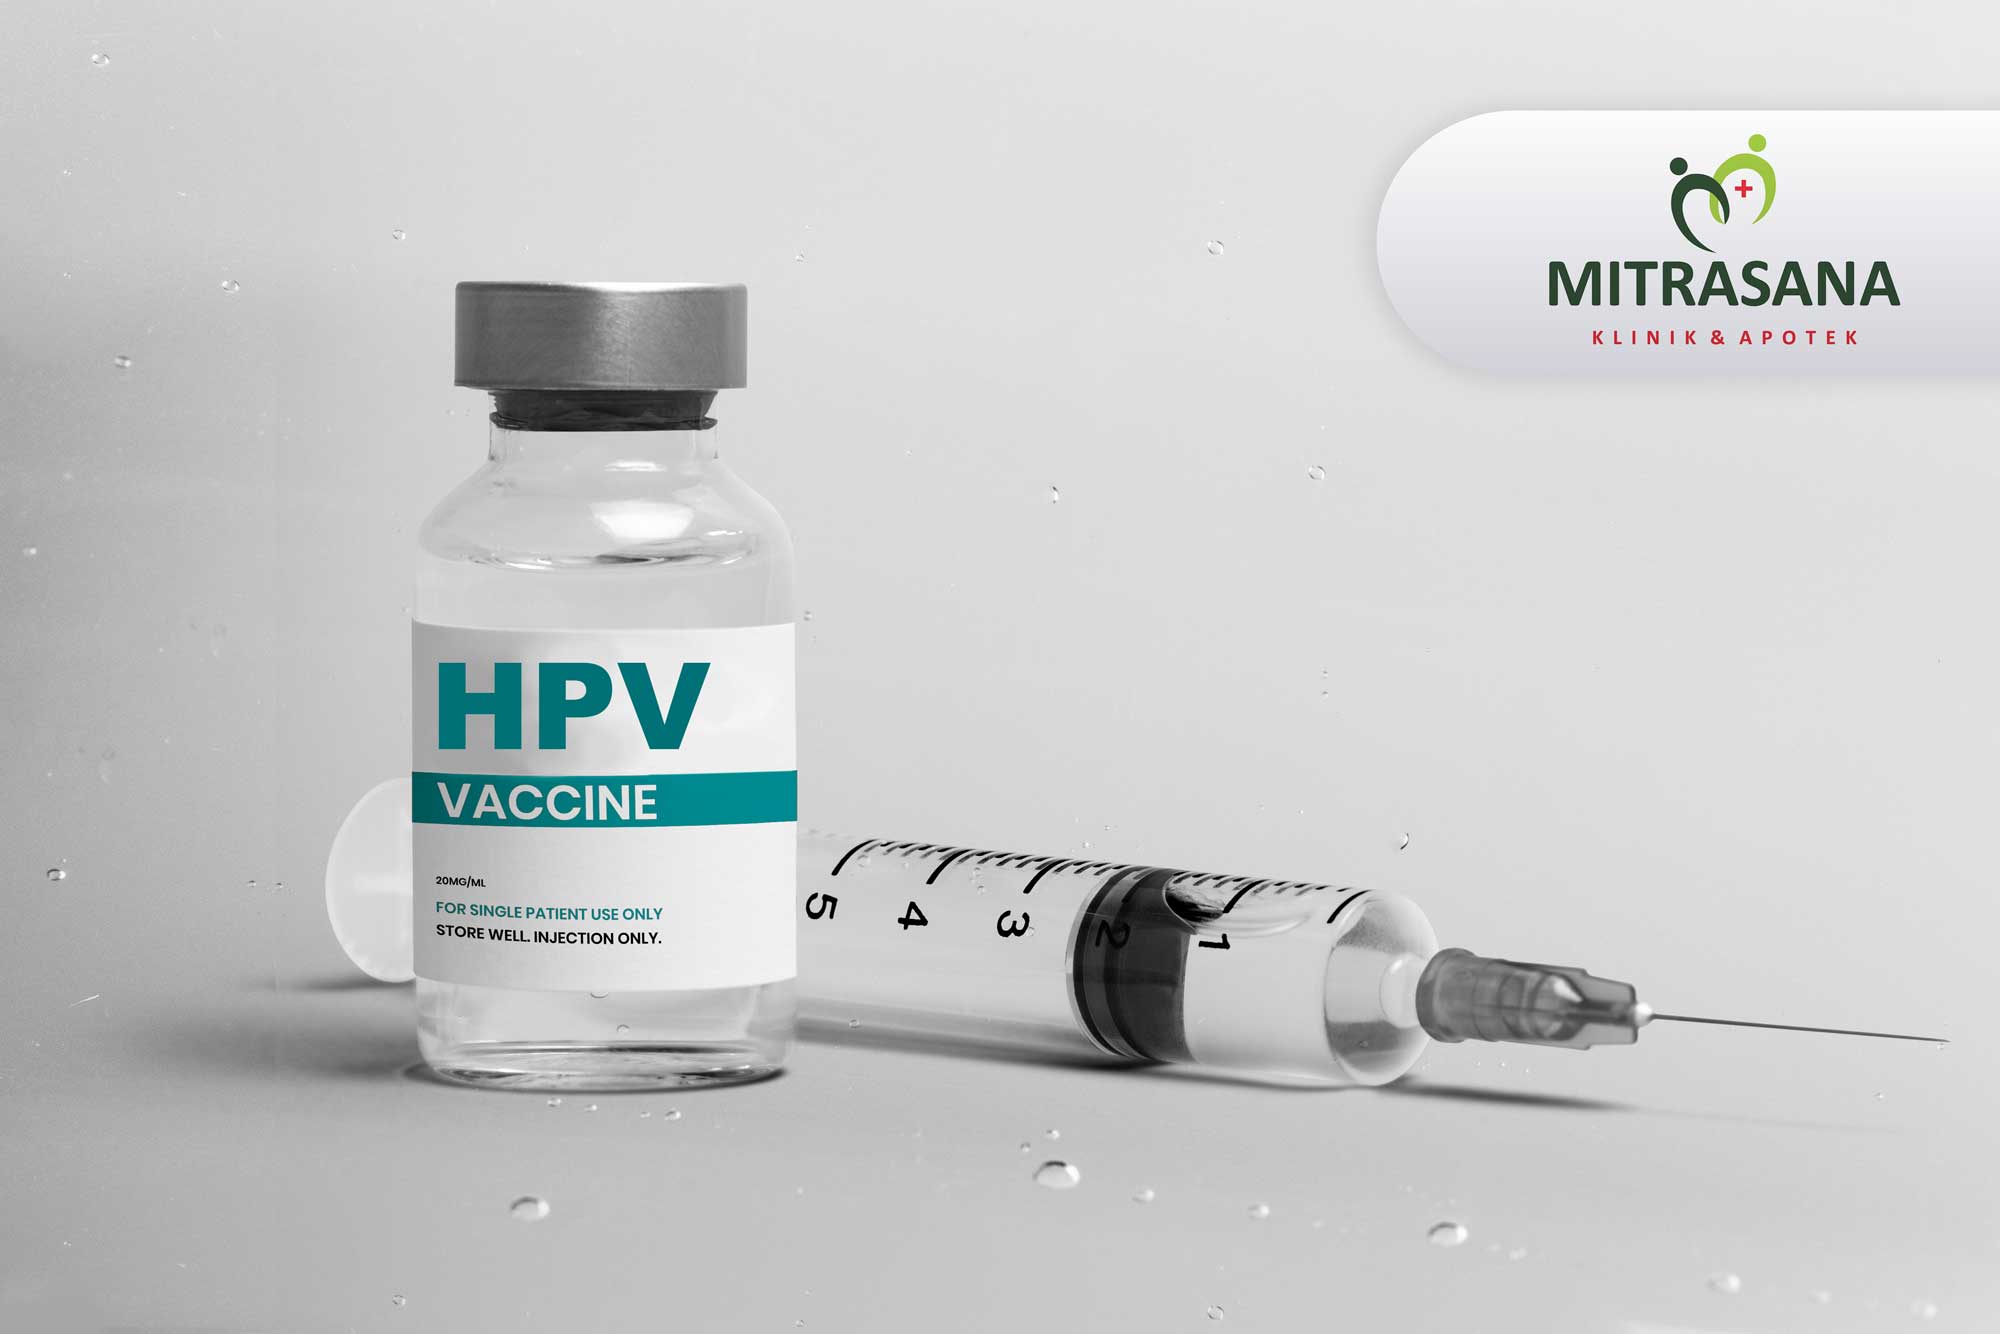 vaksin-hpv_mitrasana-1xsuntik_1678870539.jpg